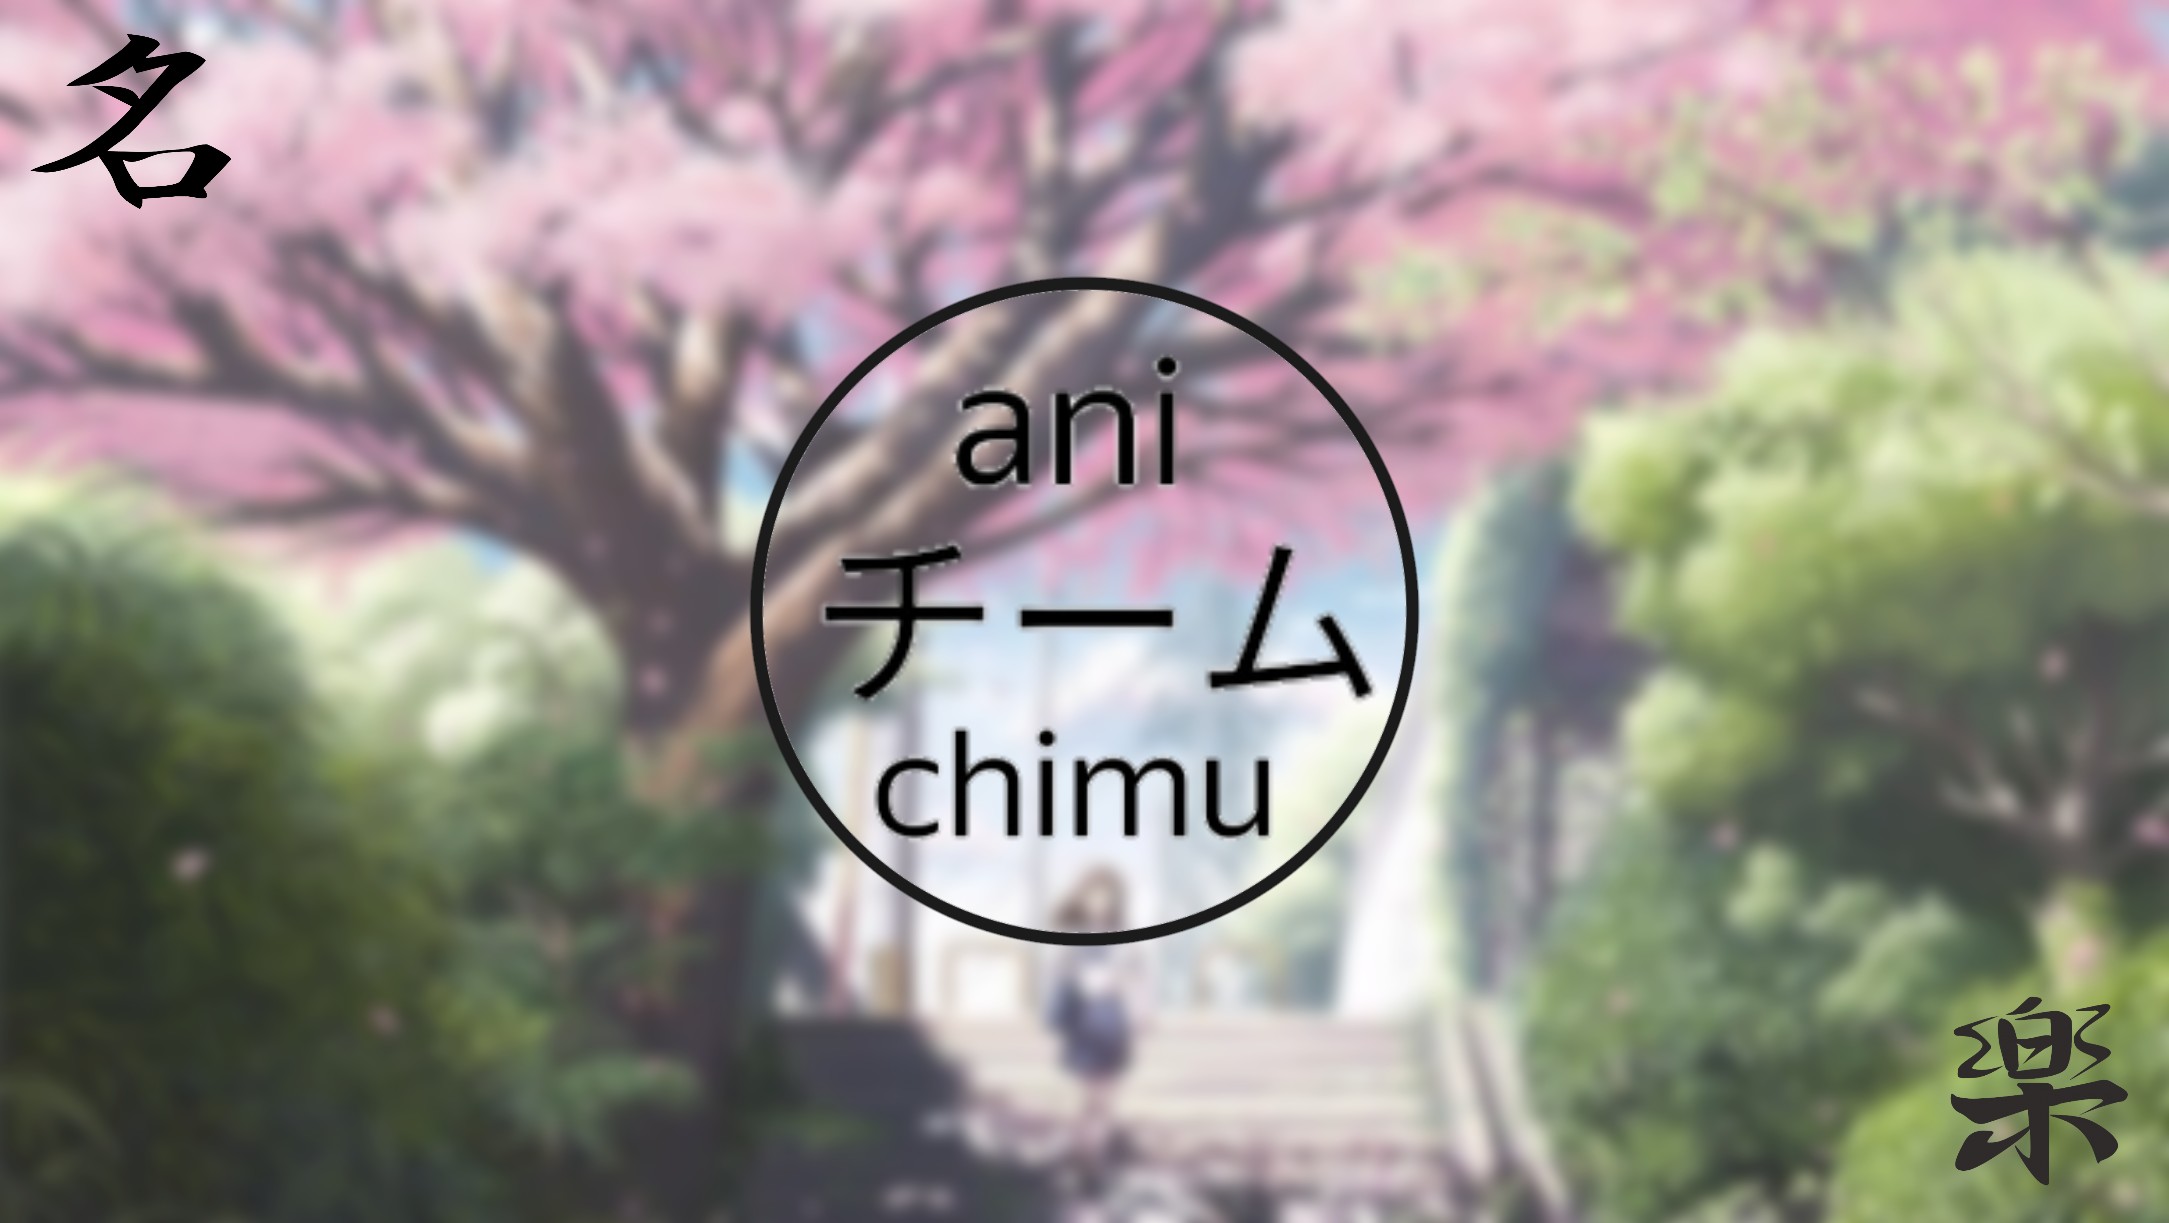 Anichimu